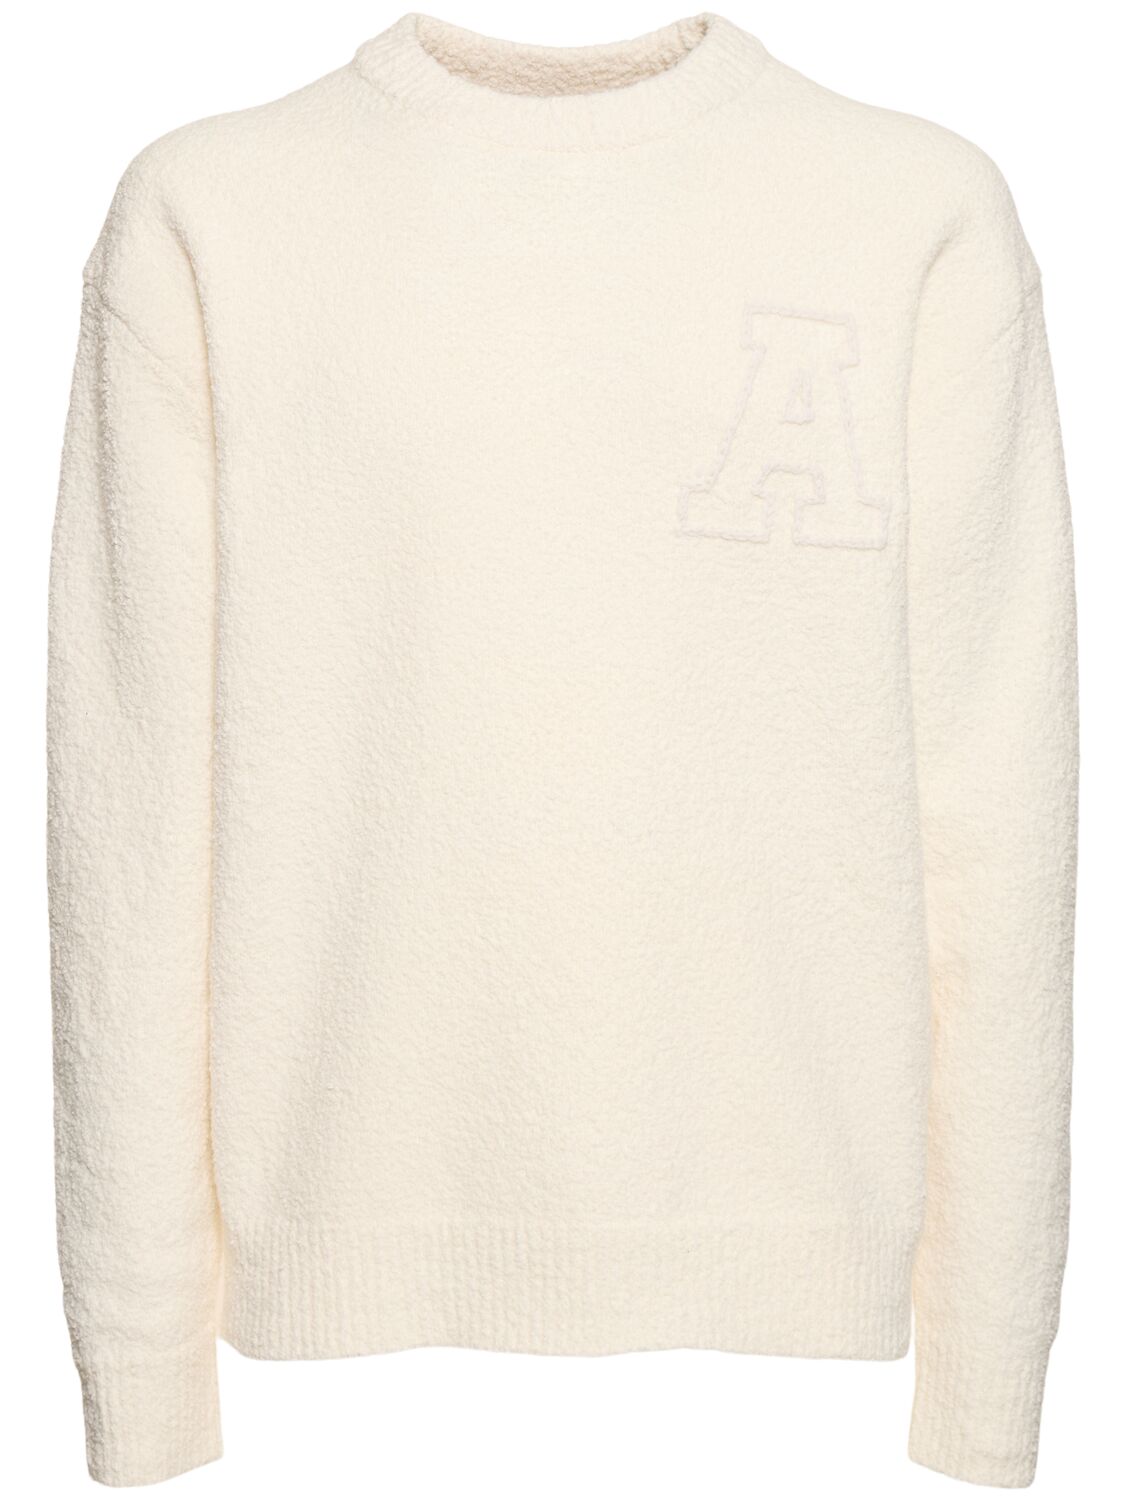 Radar Cotton Blend Sweater